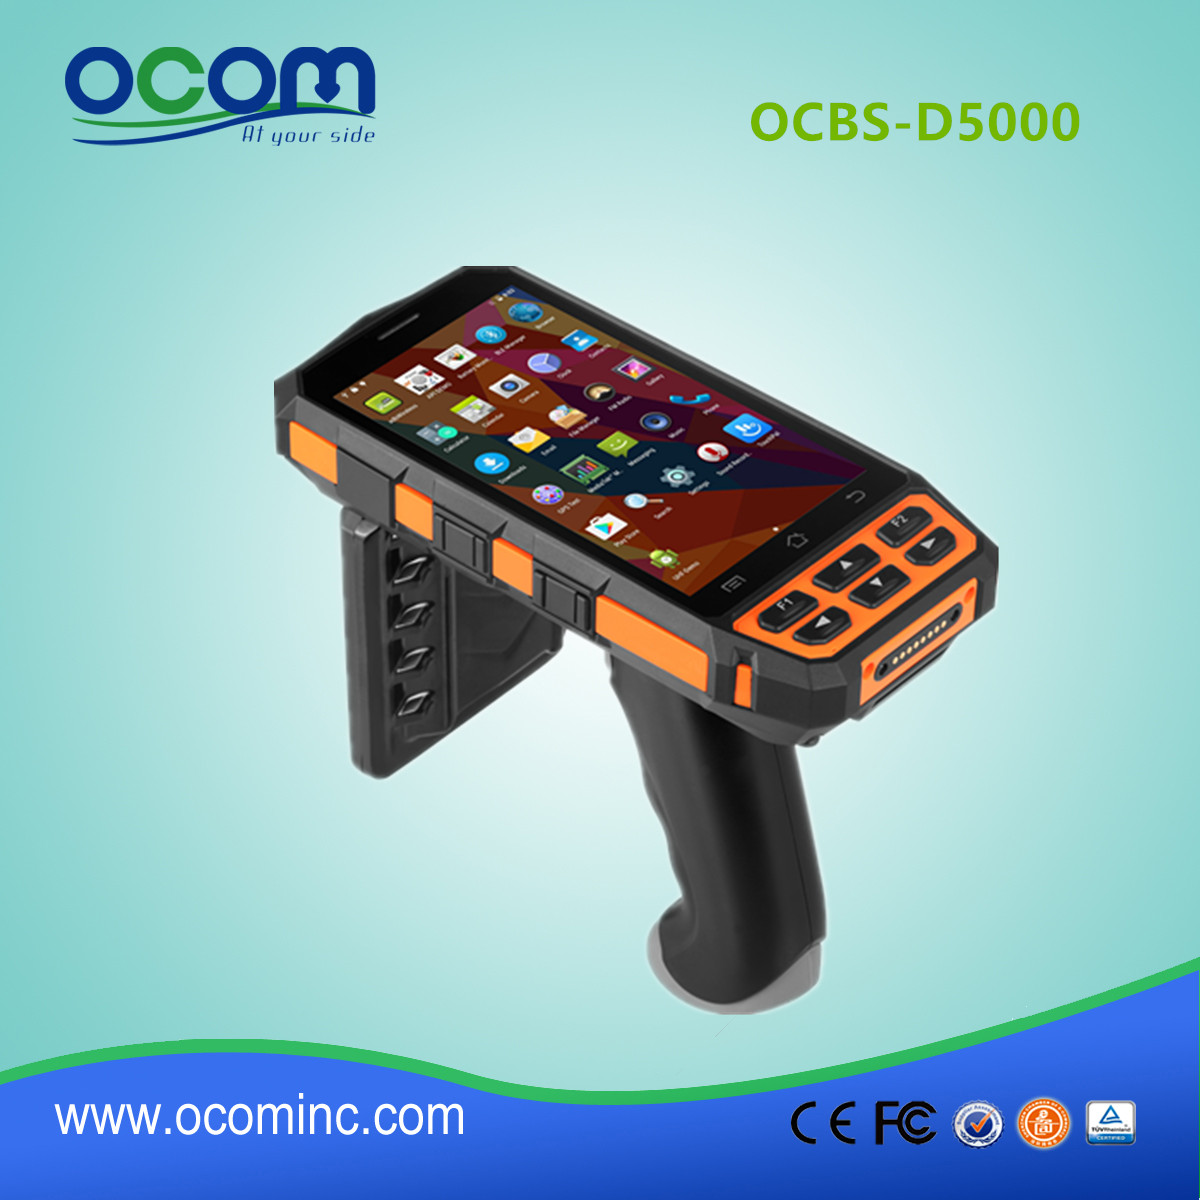 Νέο μοντέλο OCBS-D5000 Android Industrial Handheld Terminal